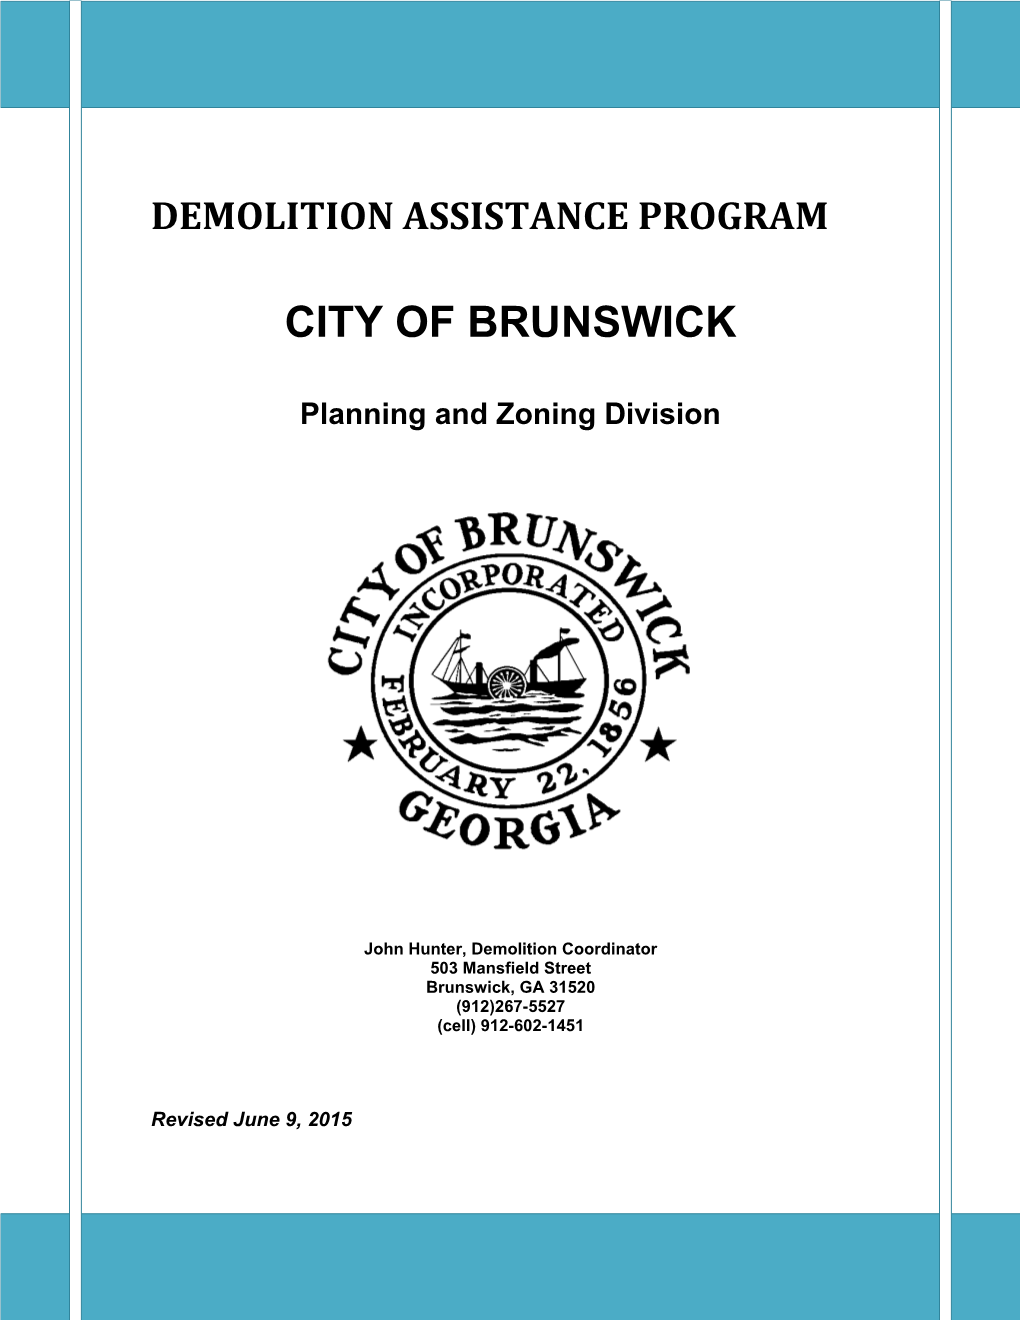 Demolition Assistance Program